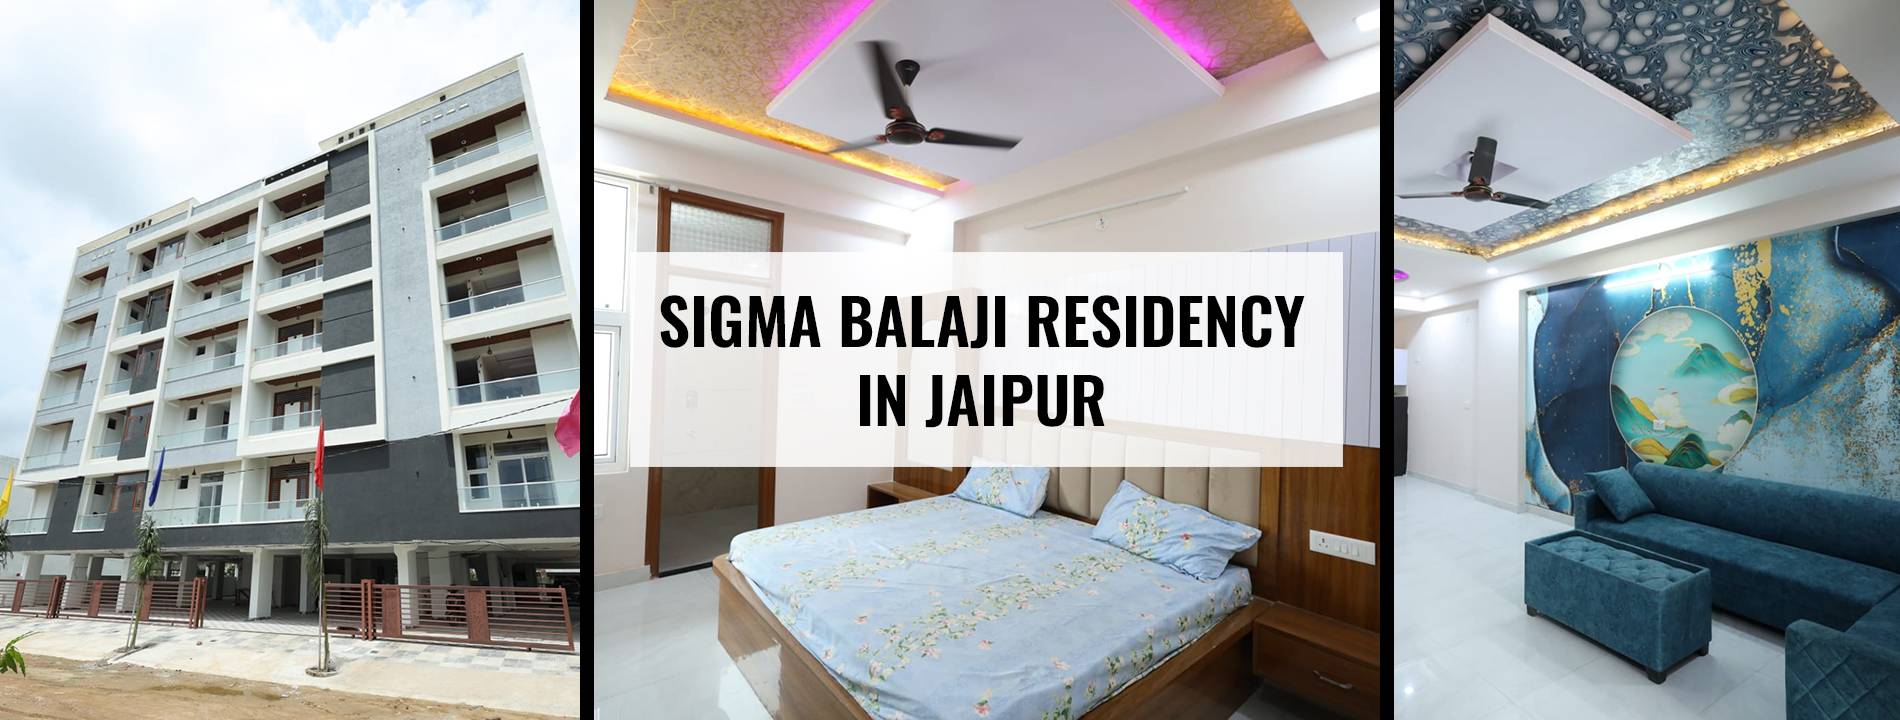 Sigma balaji residency in jaipur